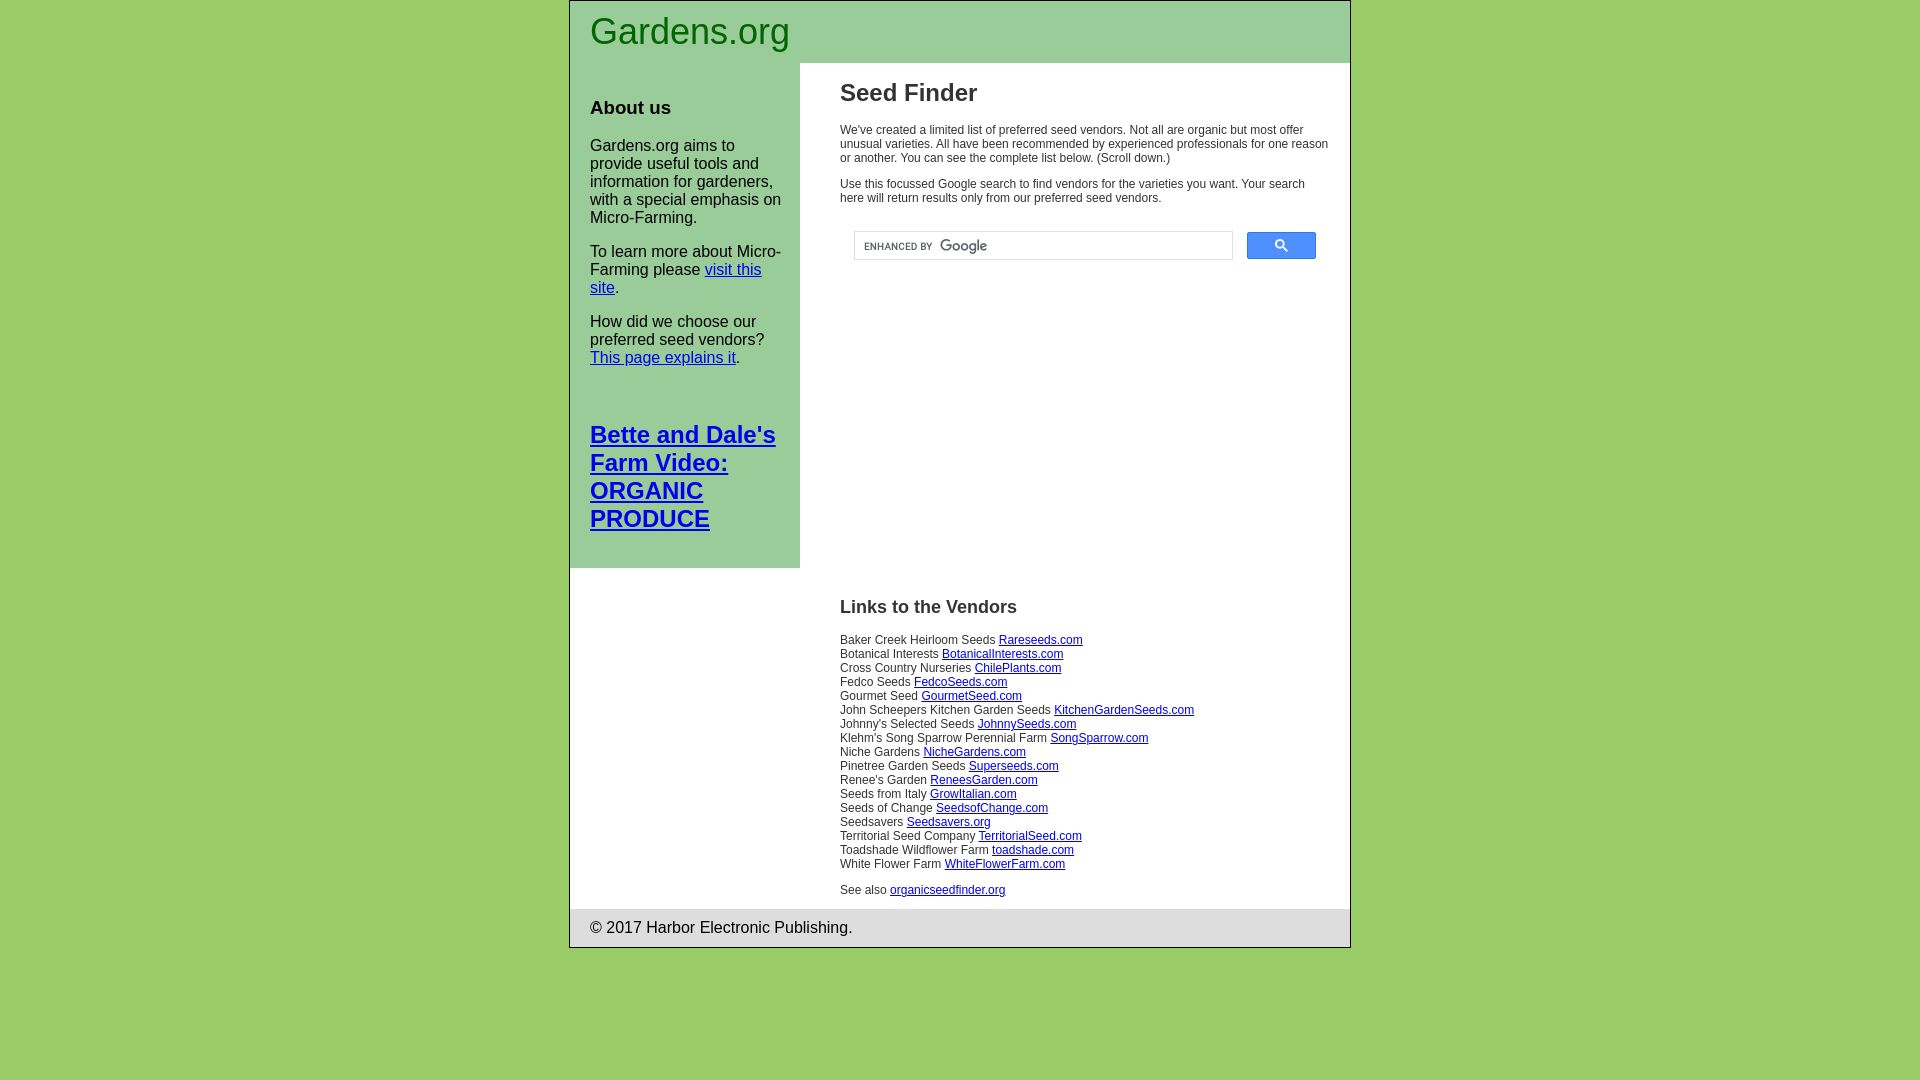 État du site web gardens.org est   EN LIGNE